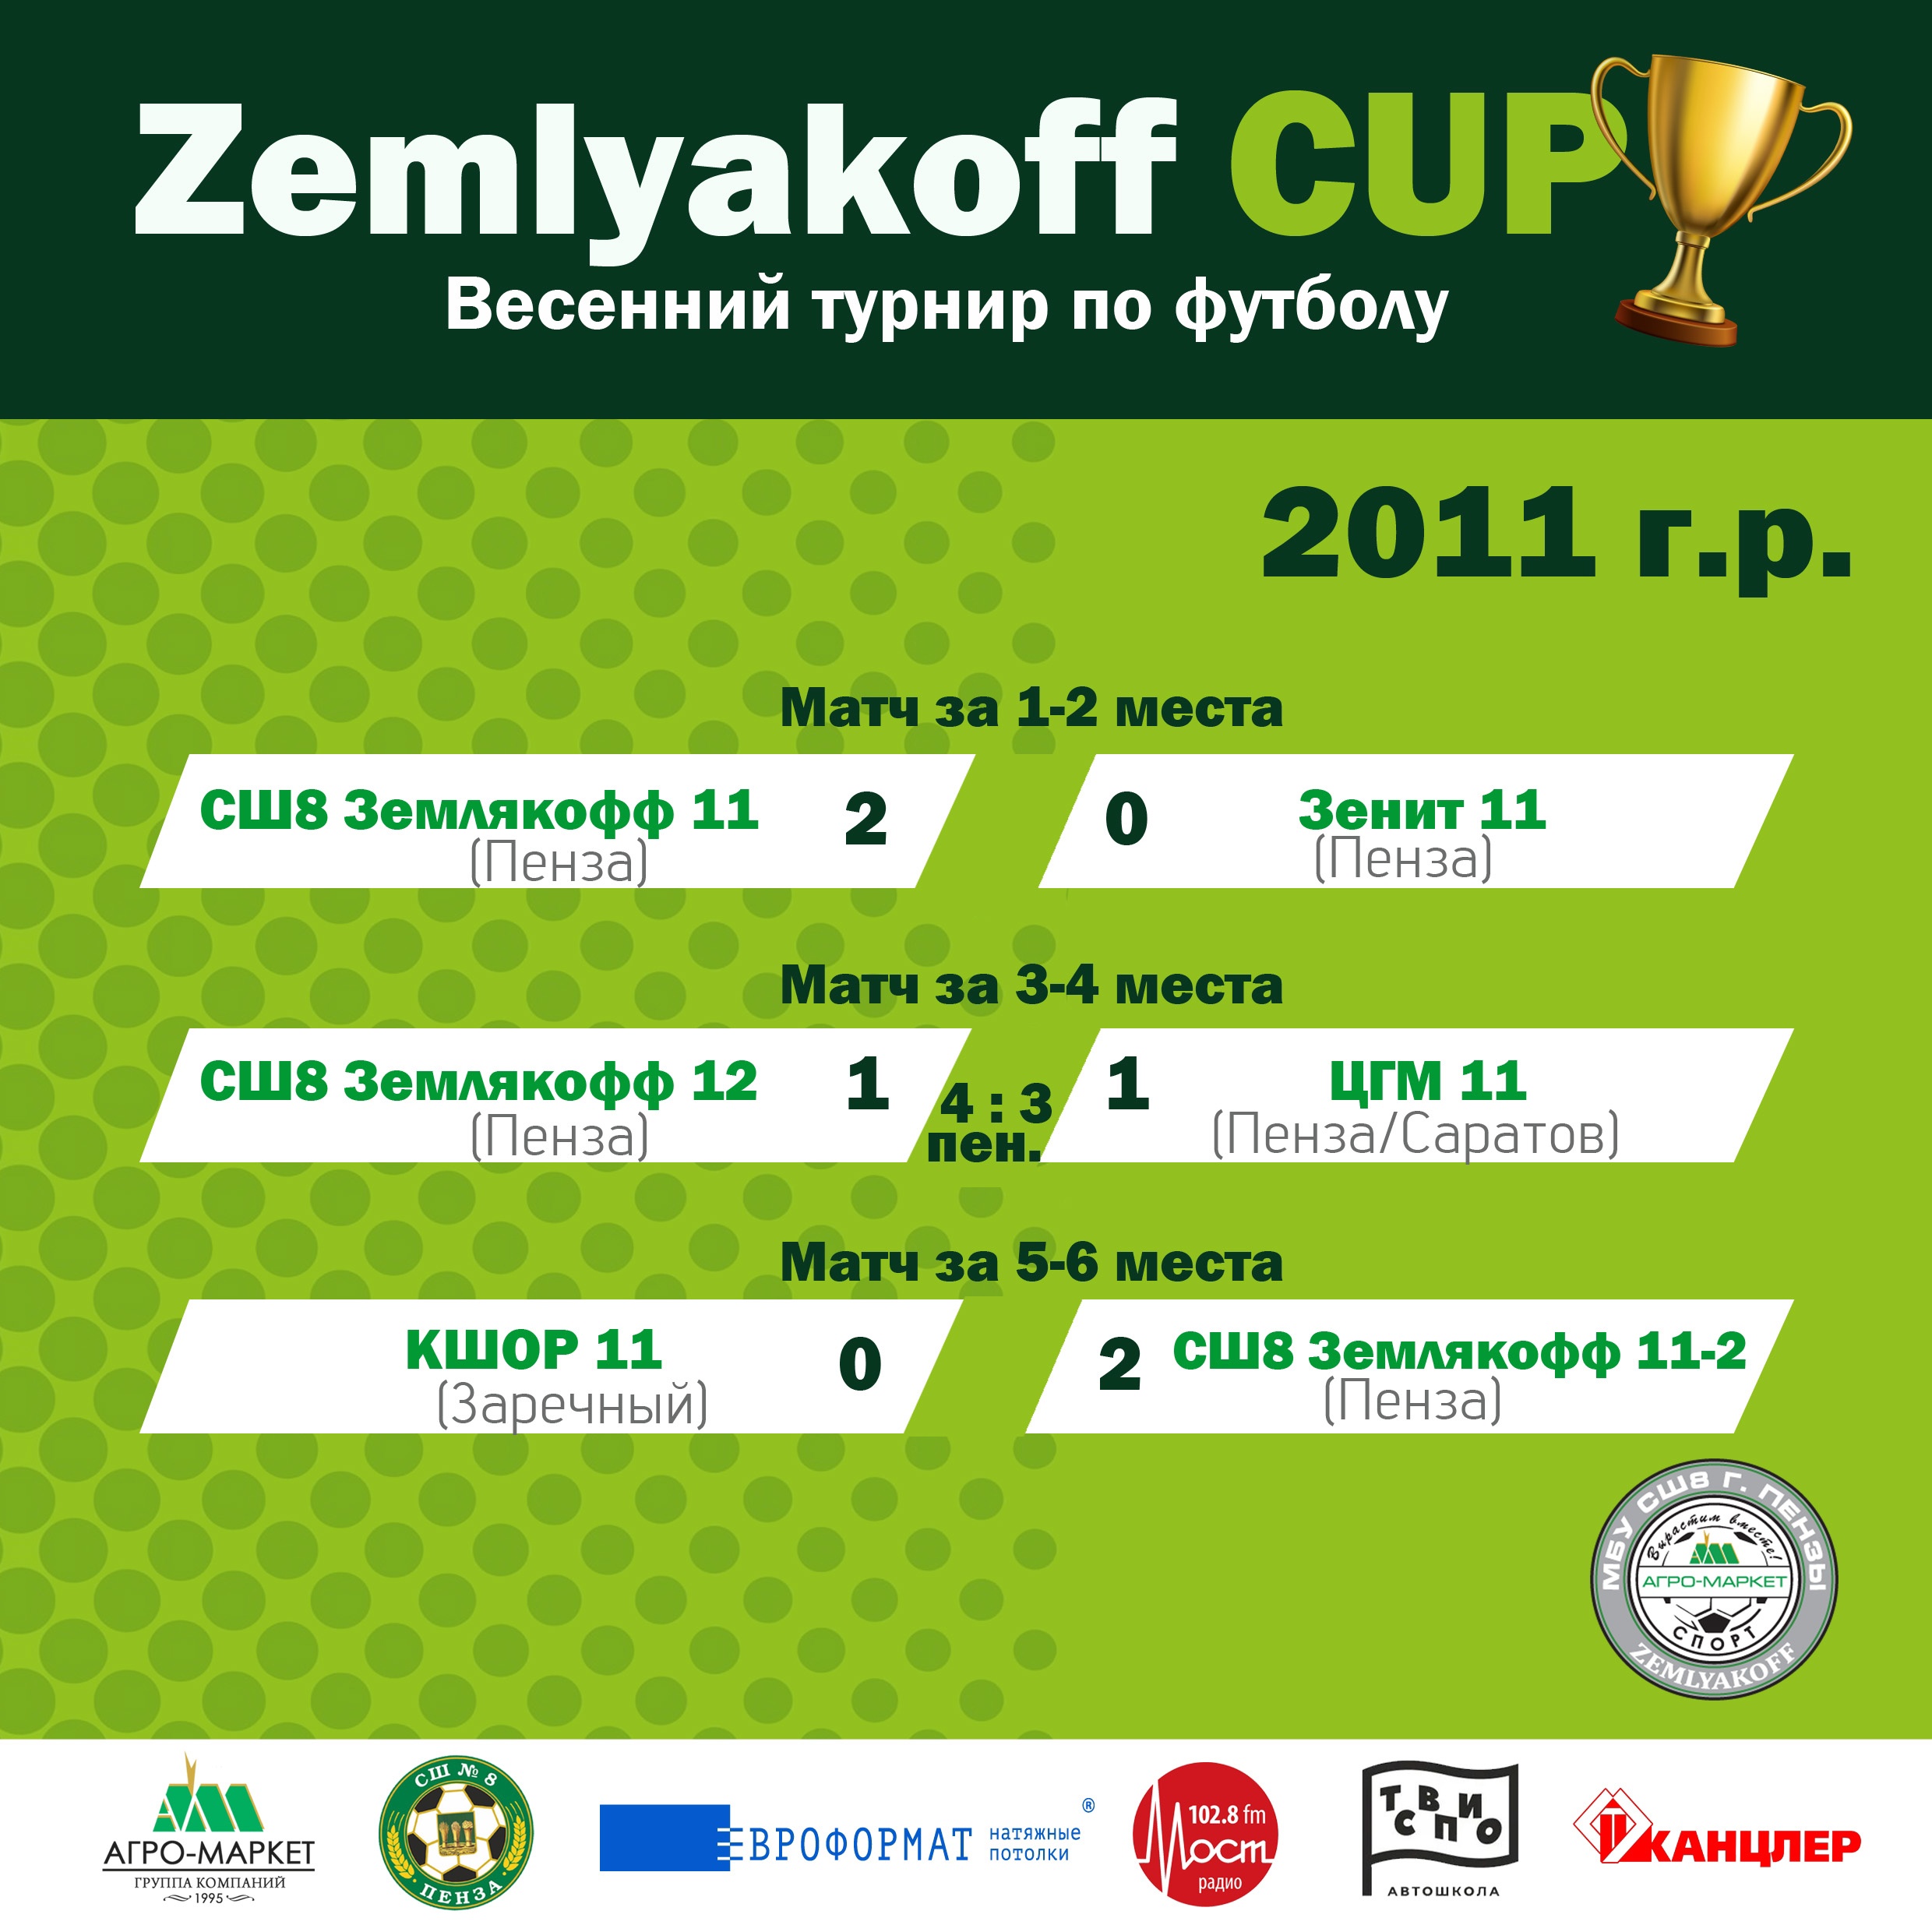 Поздравляем победителей весеннего турнира по футболу «ZEMLYAKOFF FOOTBALL CUP»!